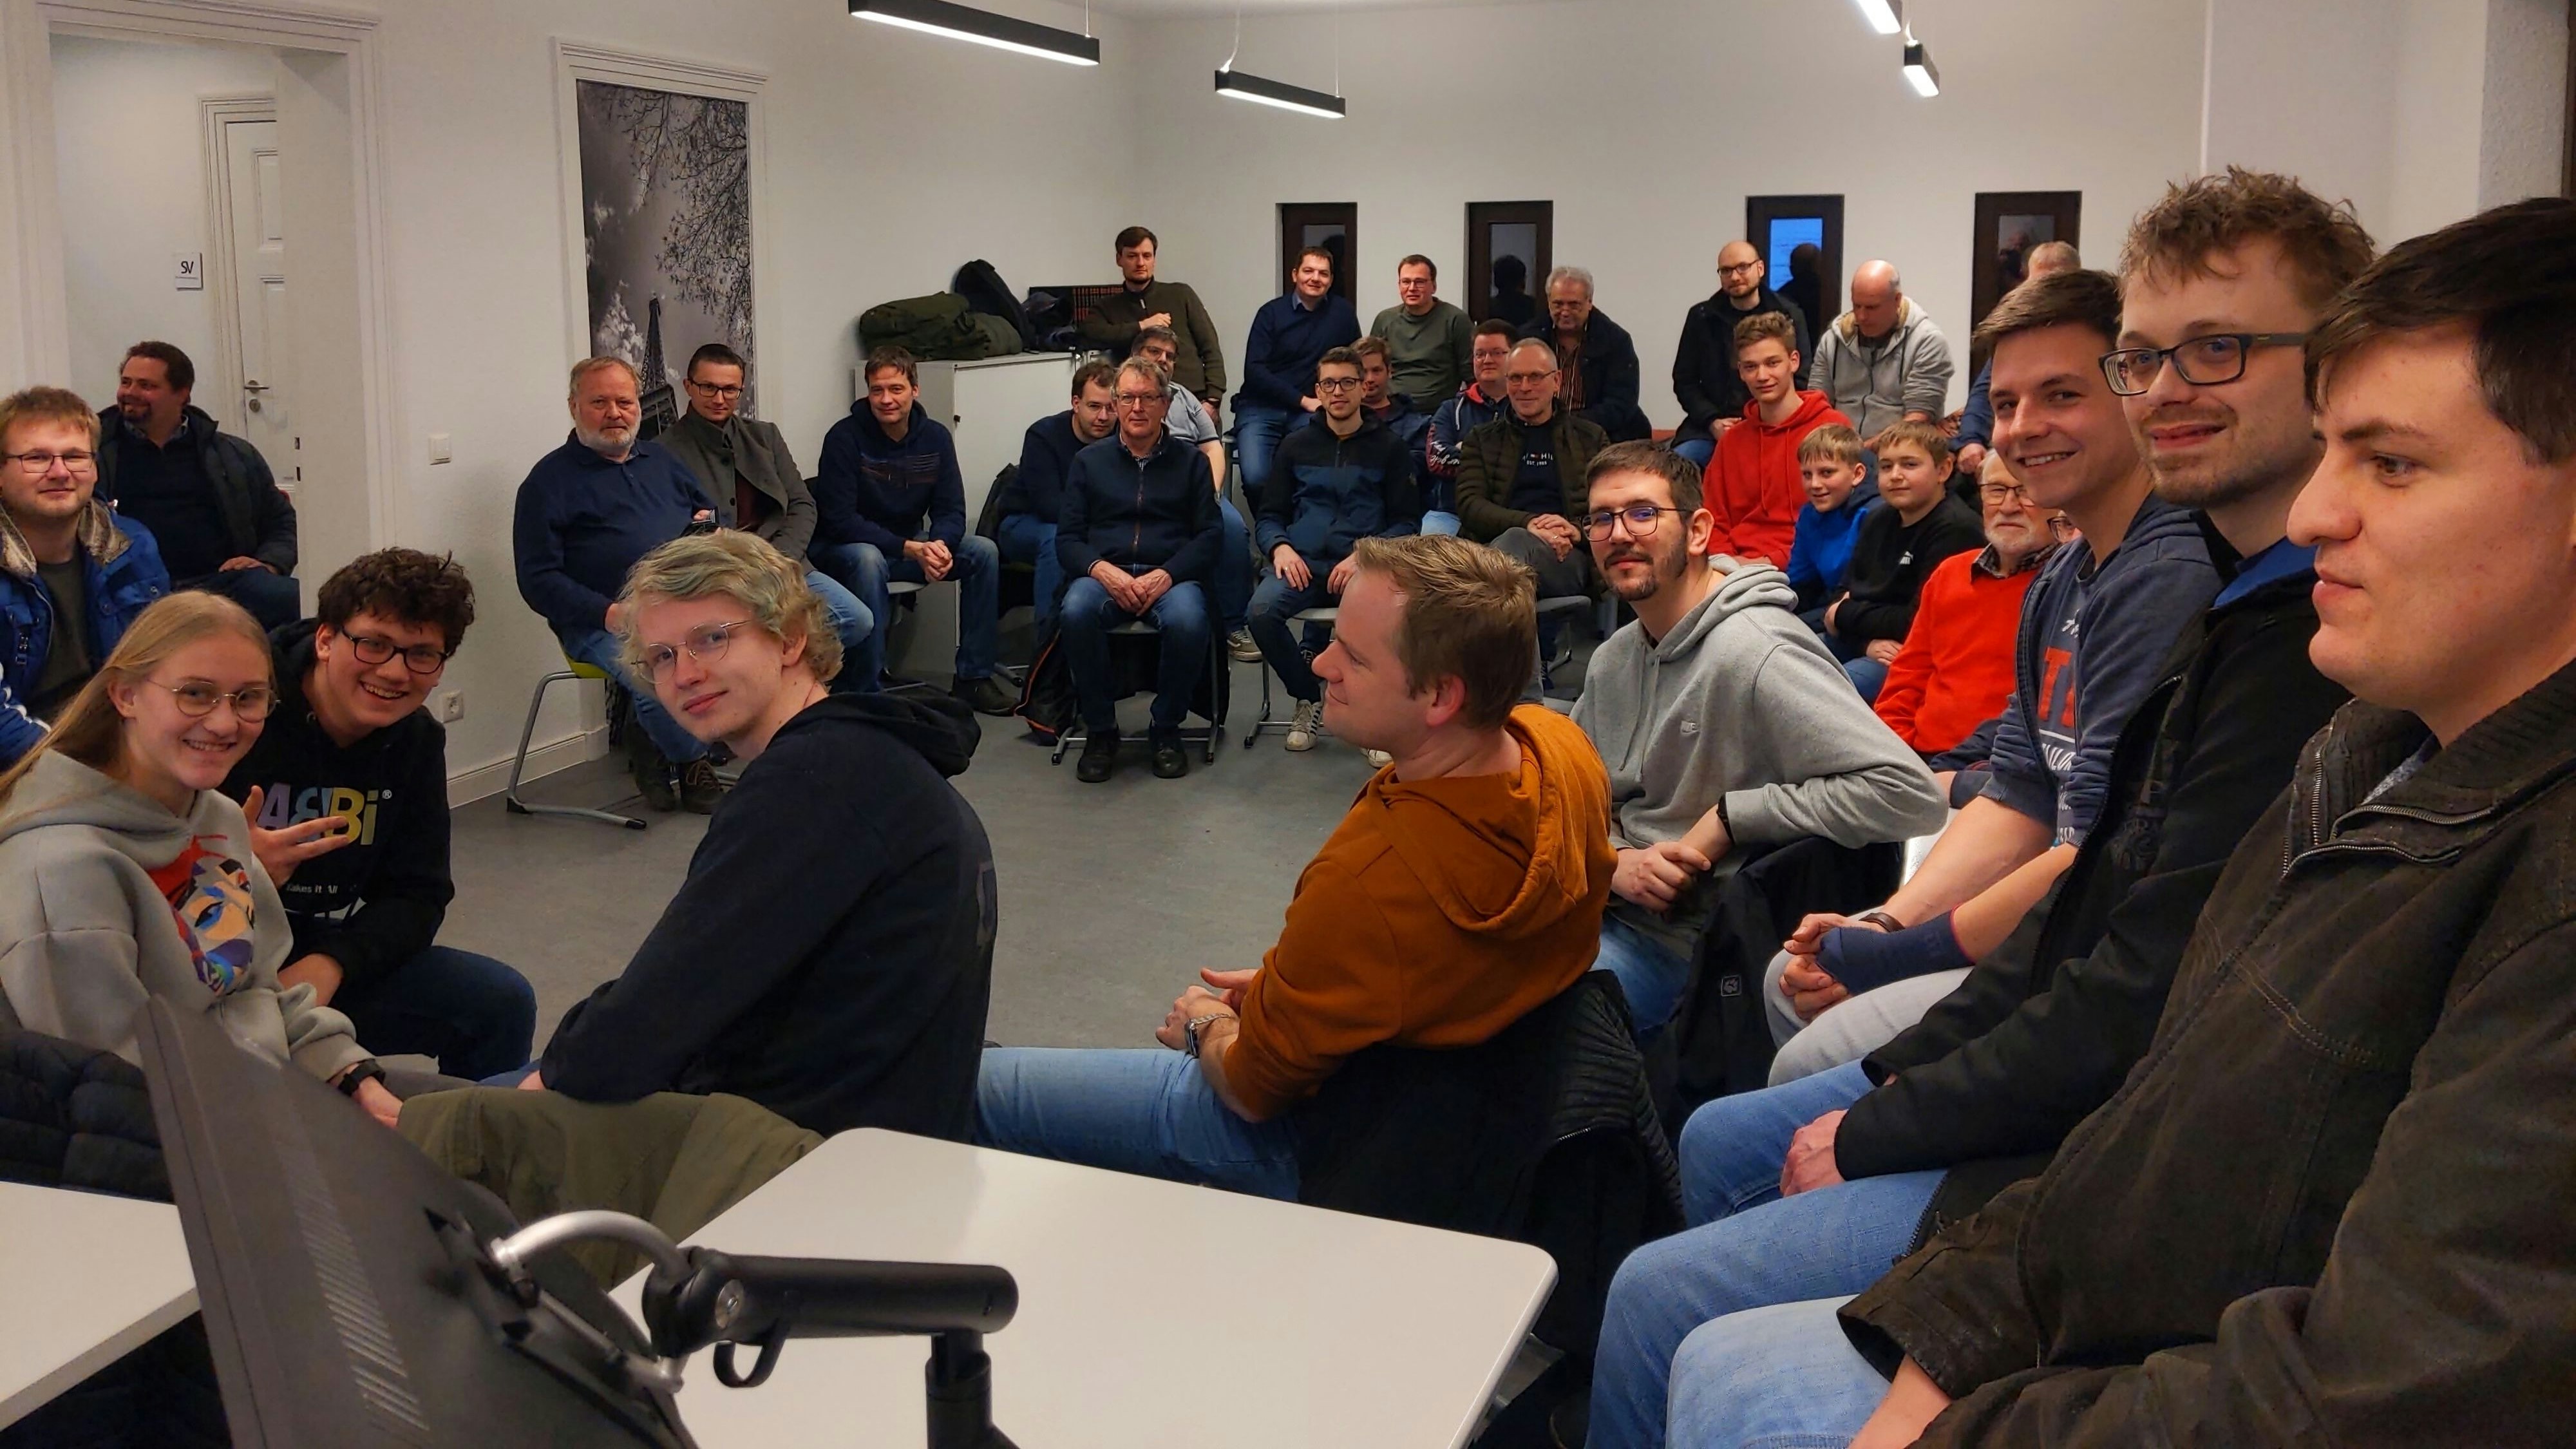 Großes Interesse: 32 Männer und 3 Frauen kamen zum 1. Friesoyther Meet &amp; Geek, einem Treffen für IT- und technikinteressierte Menschen. Foto: Baran